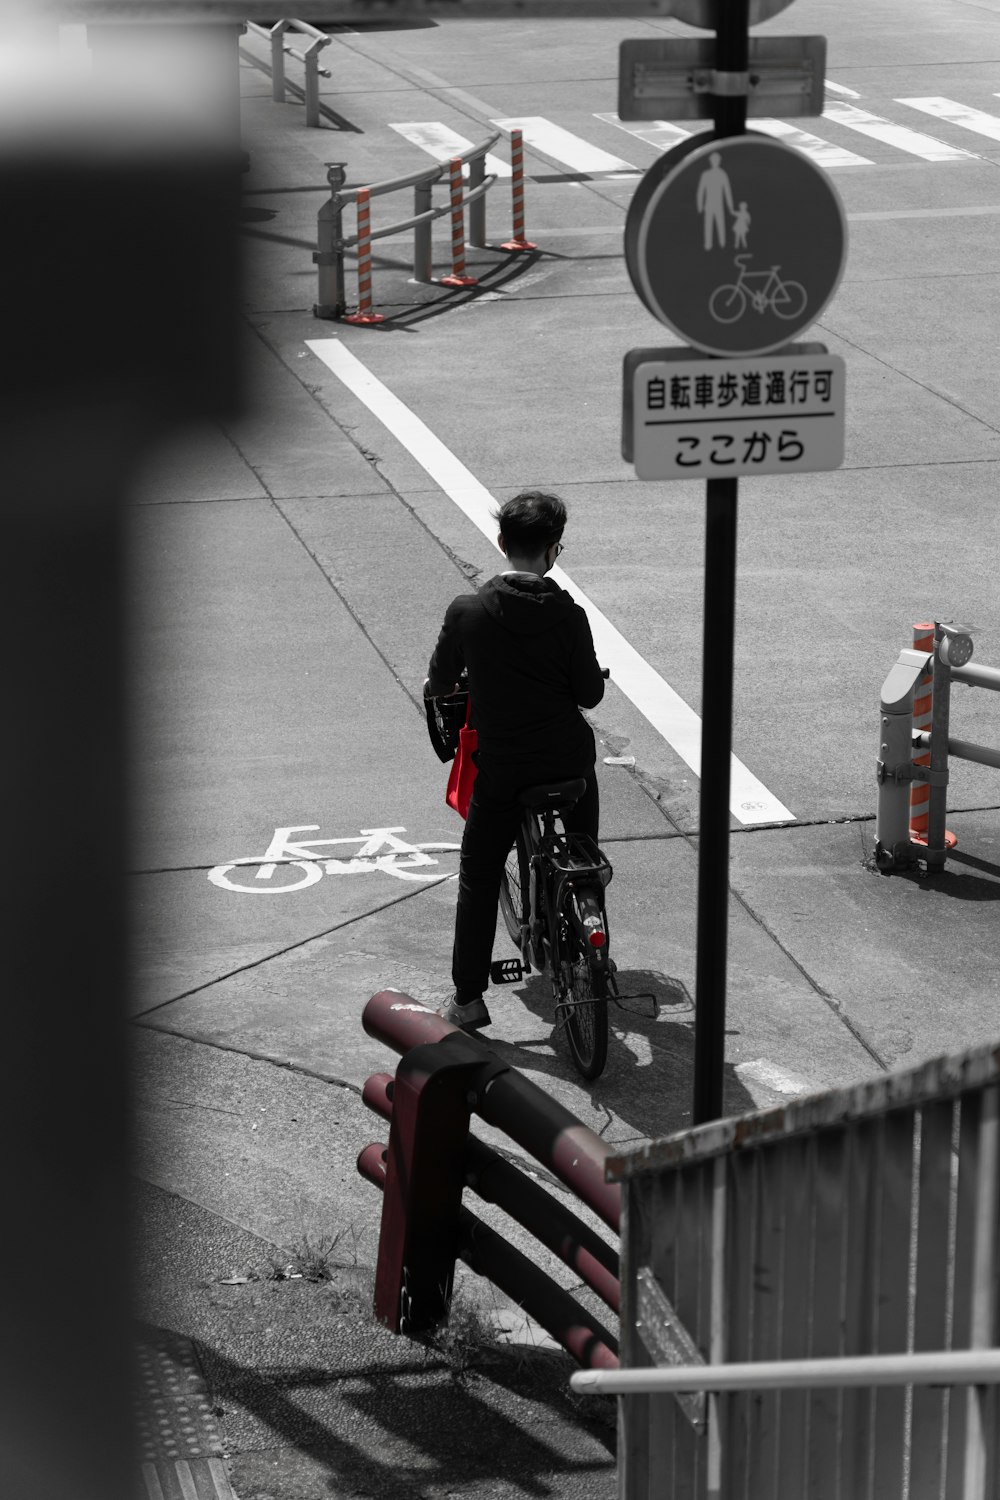 a man riding a bike down a street next to a street sign